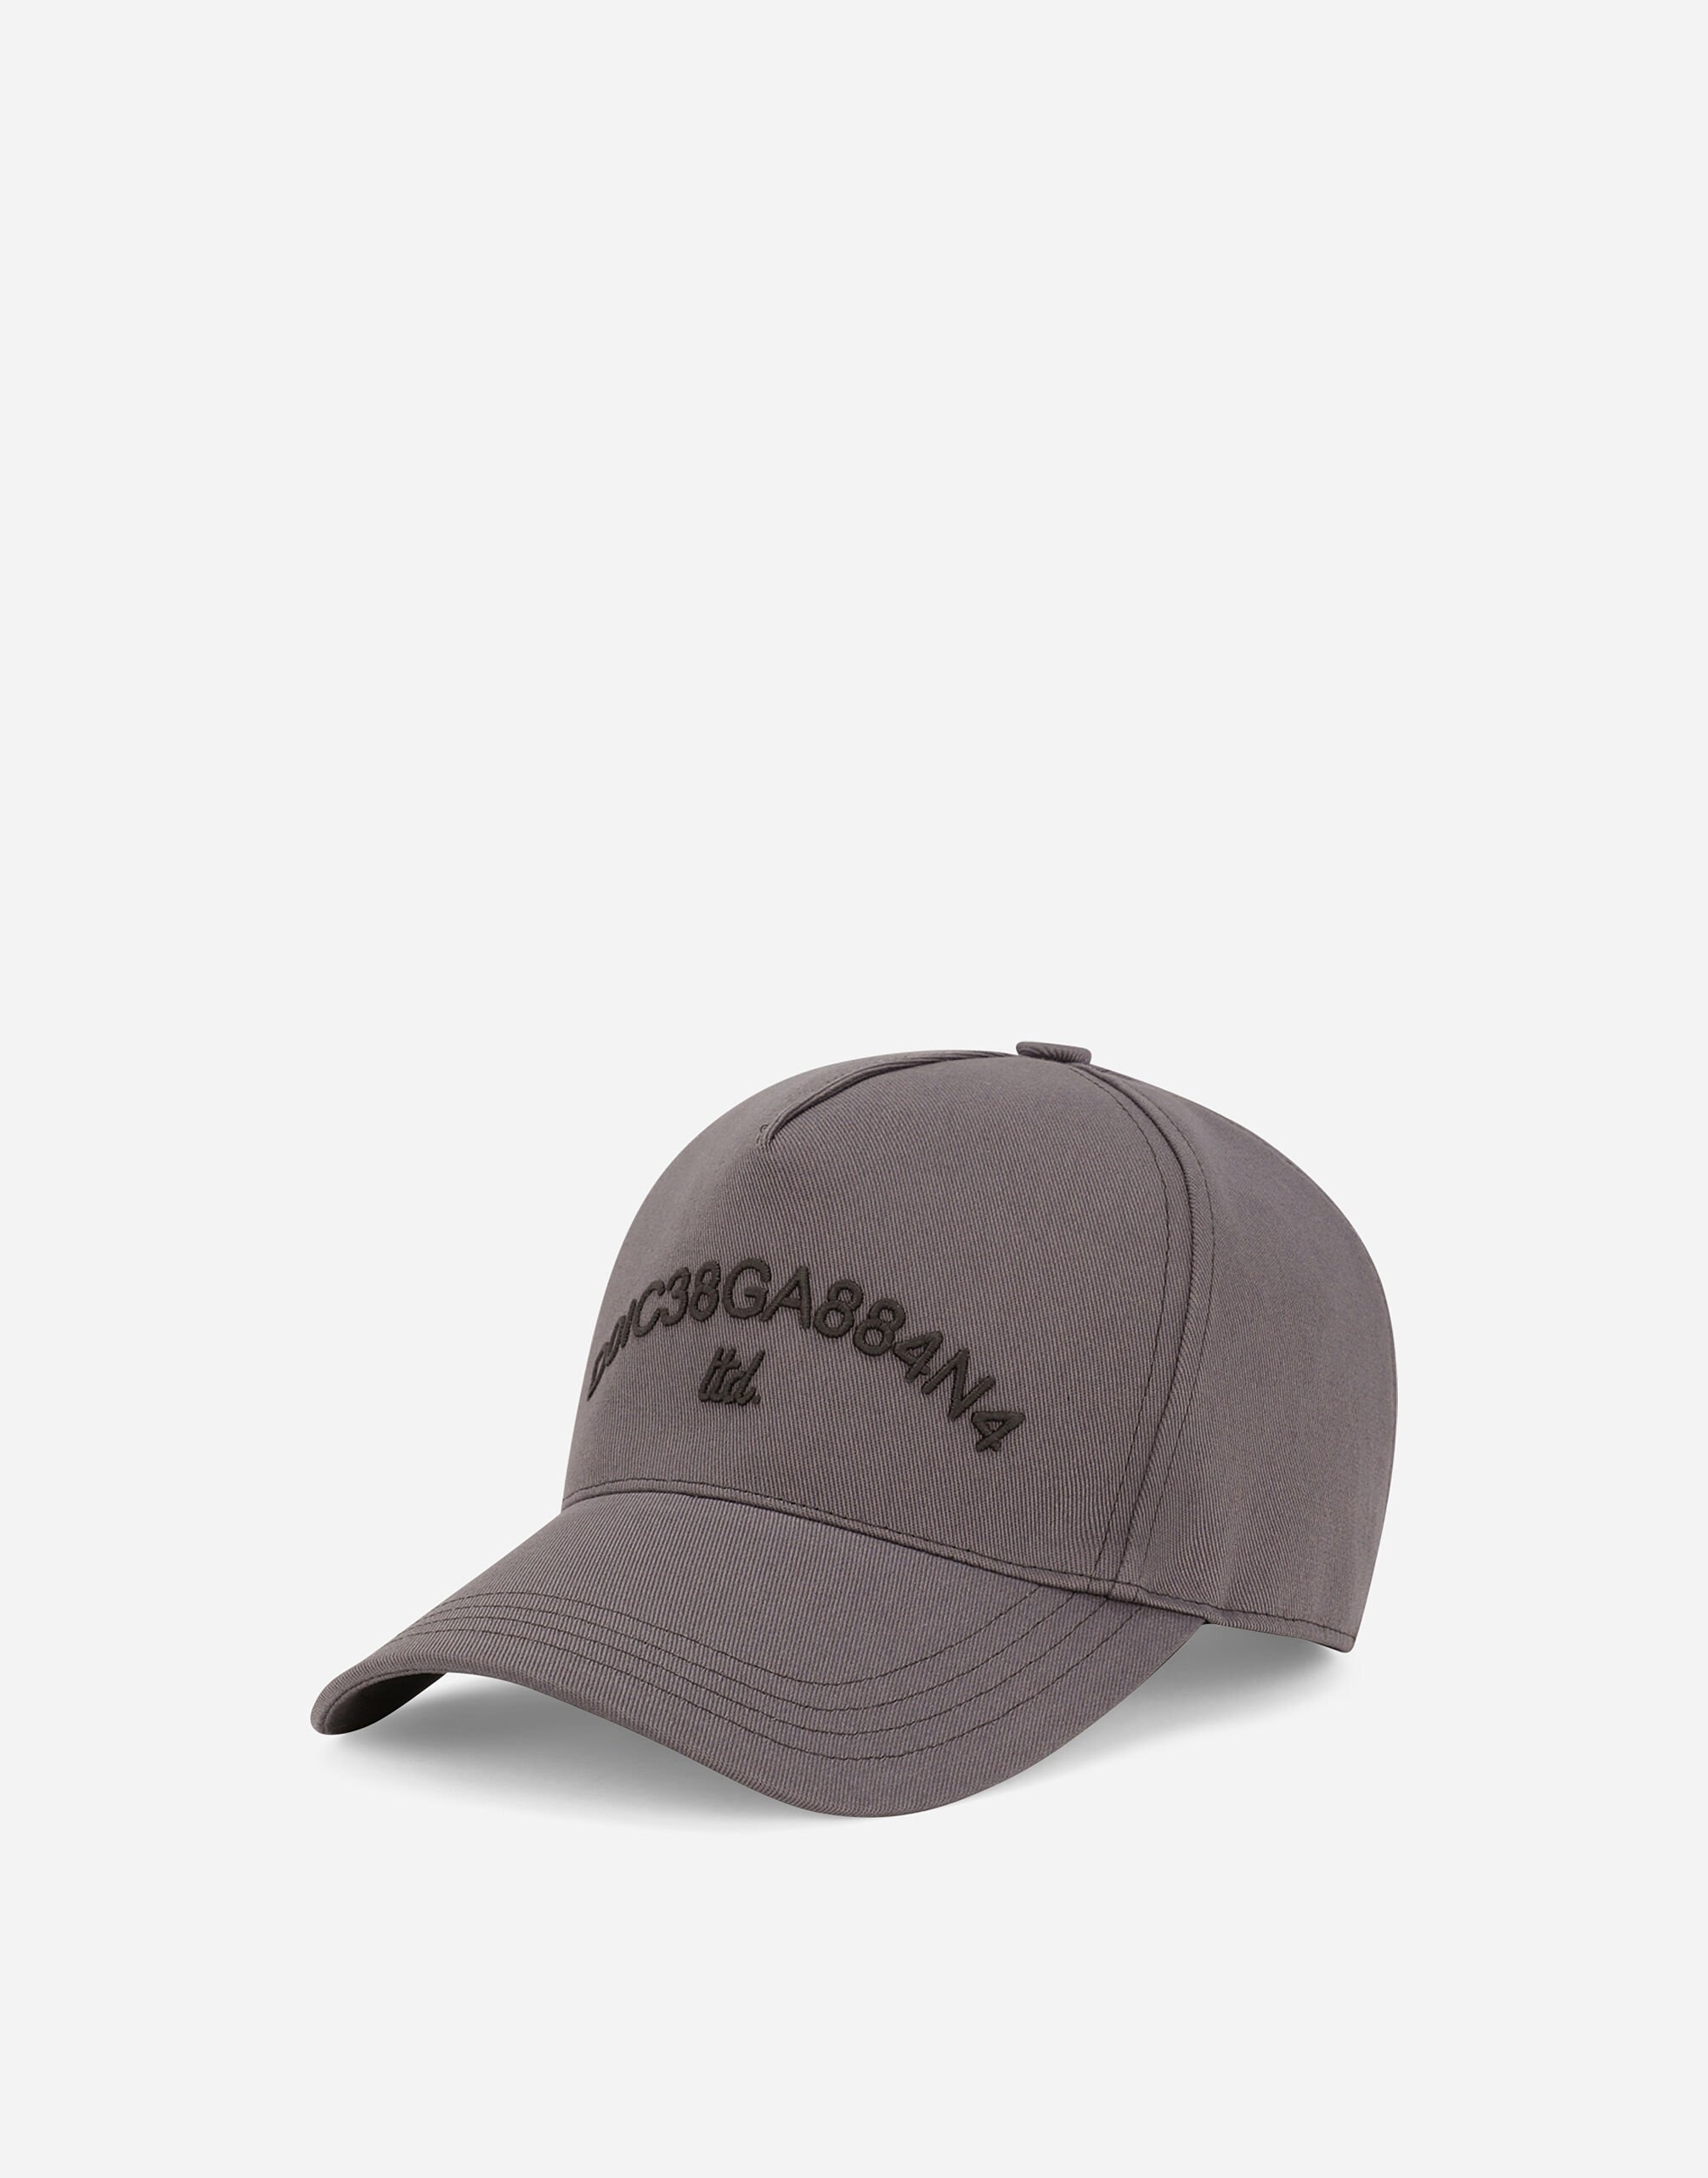 Baseball cap with Dolce&Gabbana logo - 1